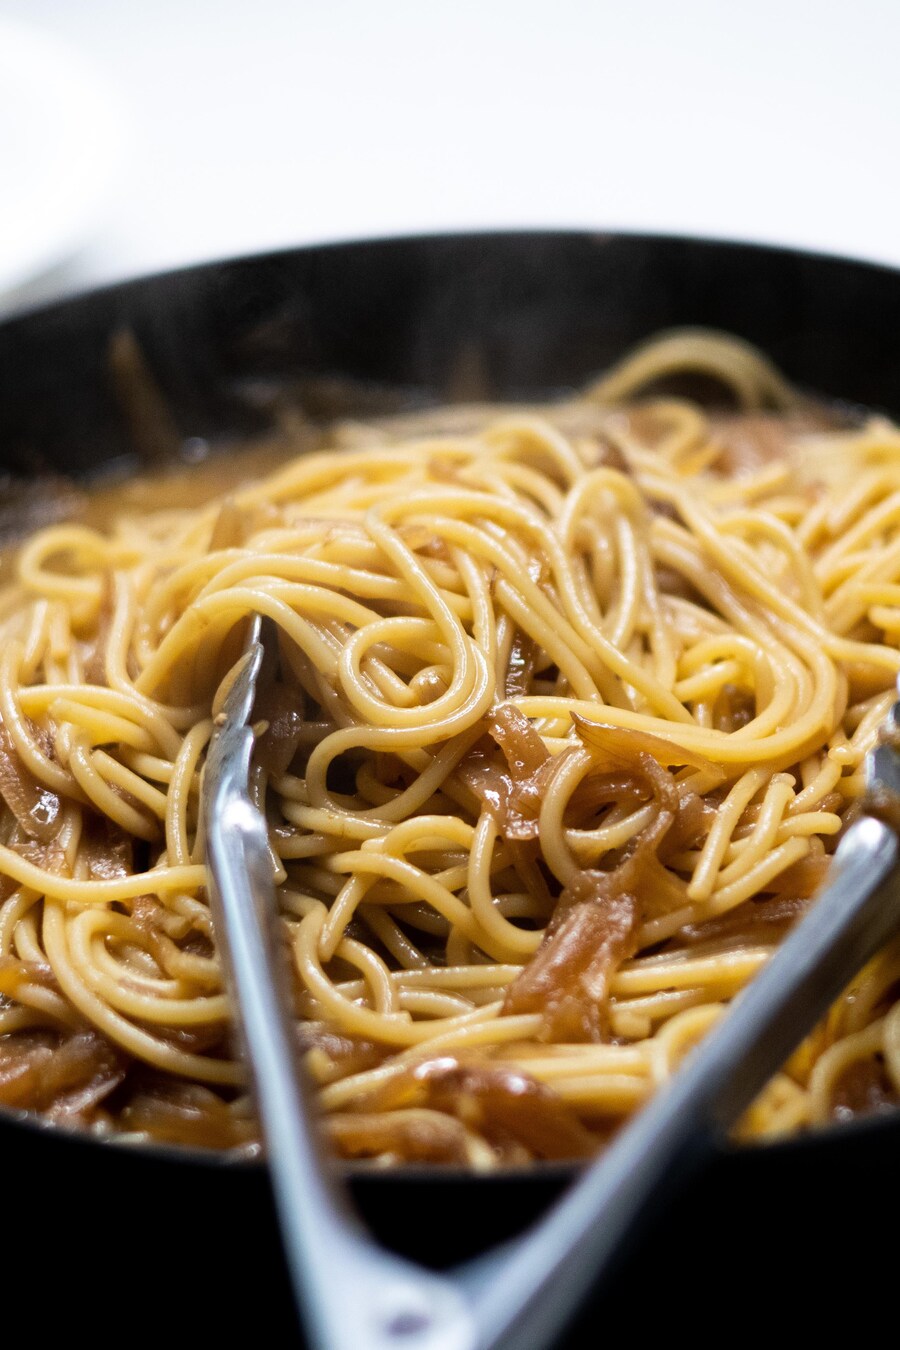 Des spaghettis dans une sauce aux oignons caramélisés. 